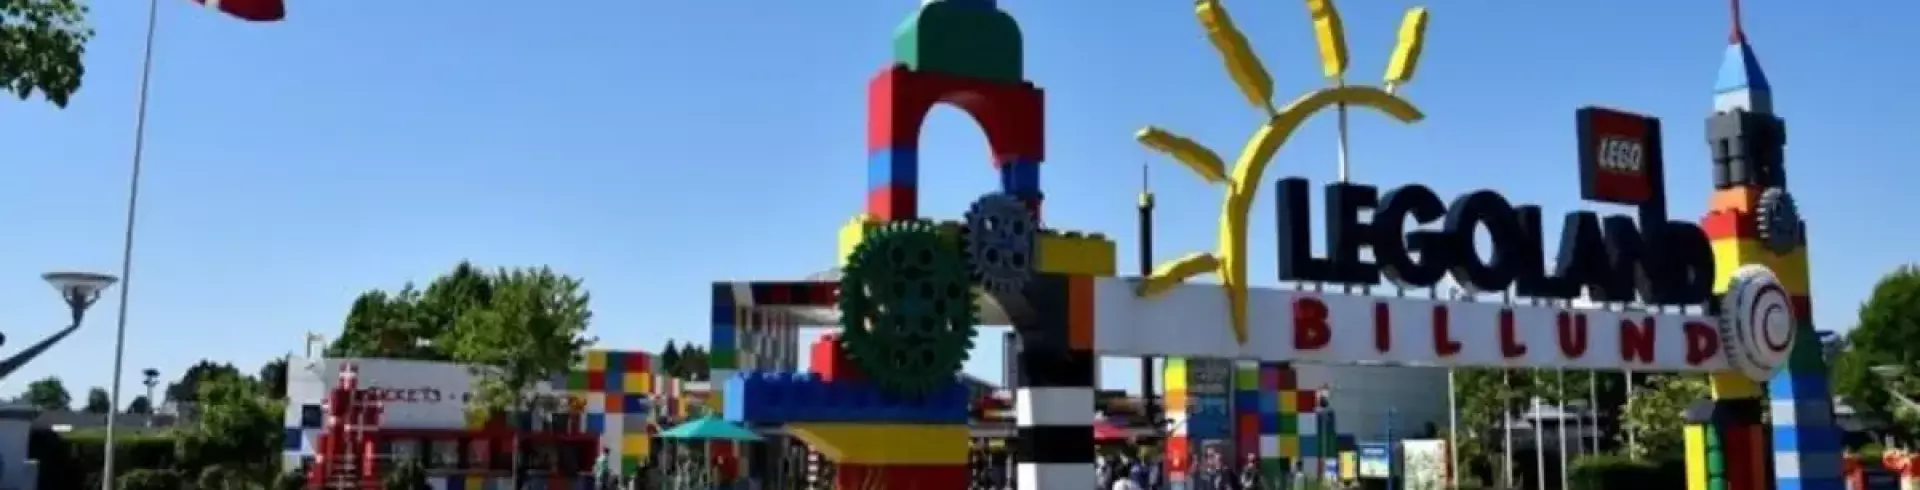 Świat Miniatur w Hamburgu i Legoland w B